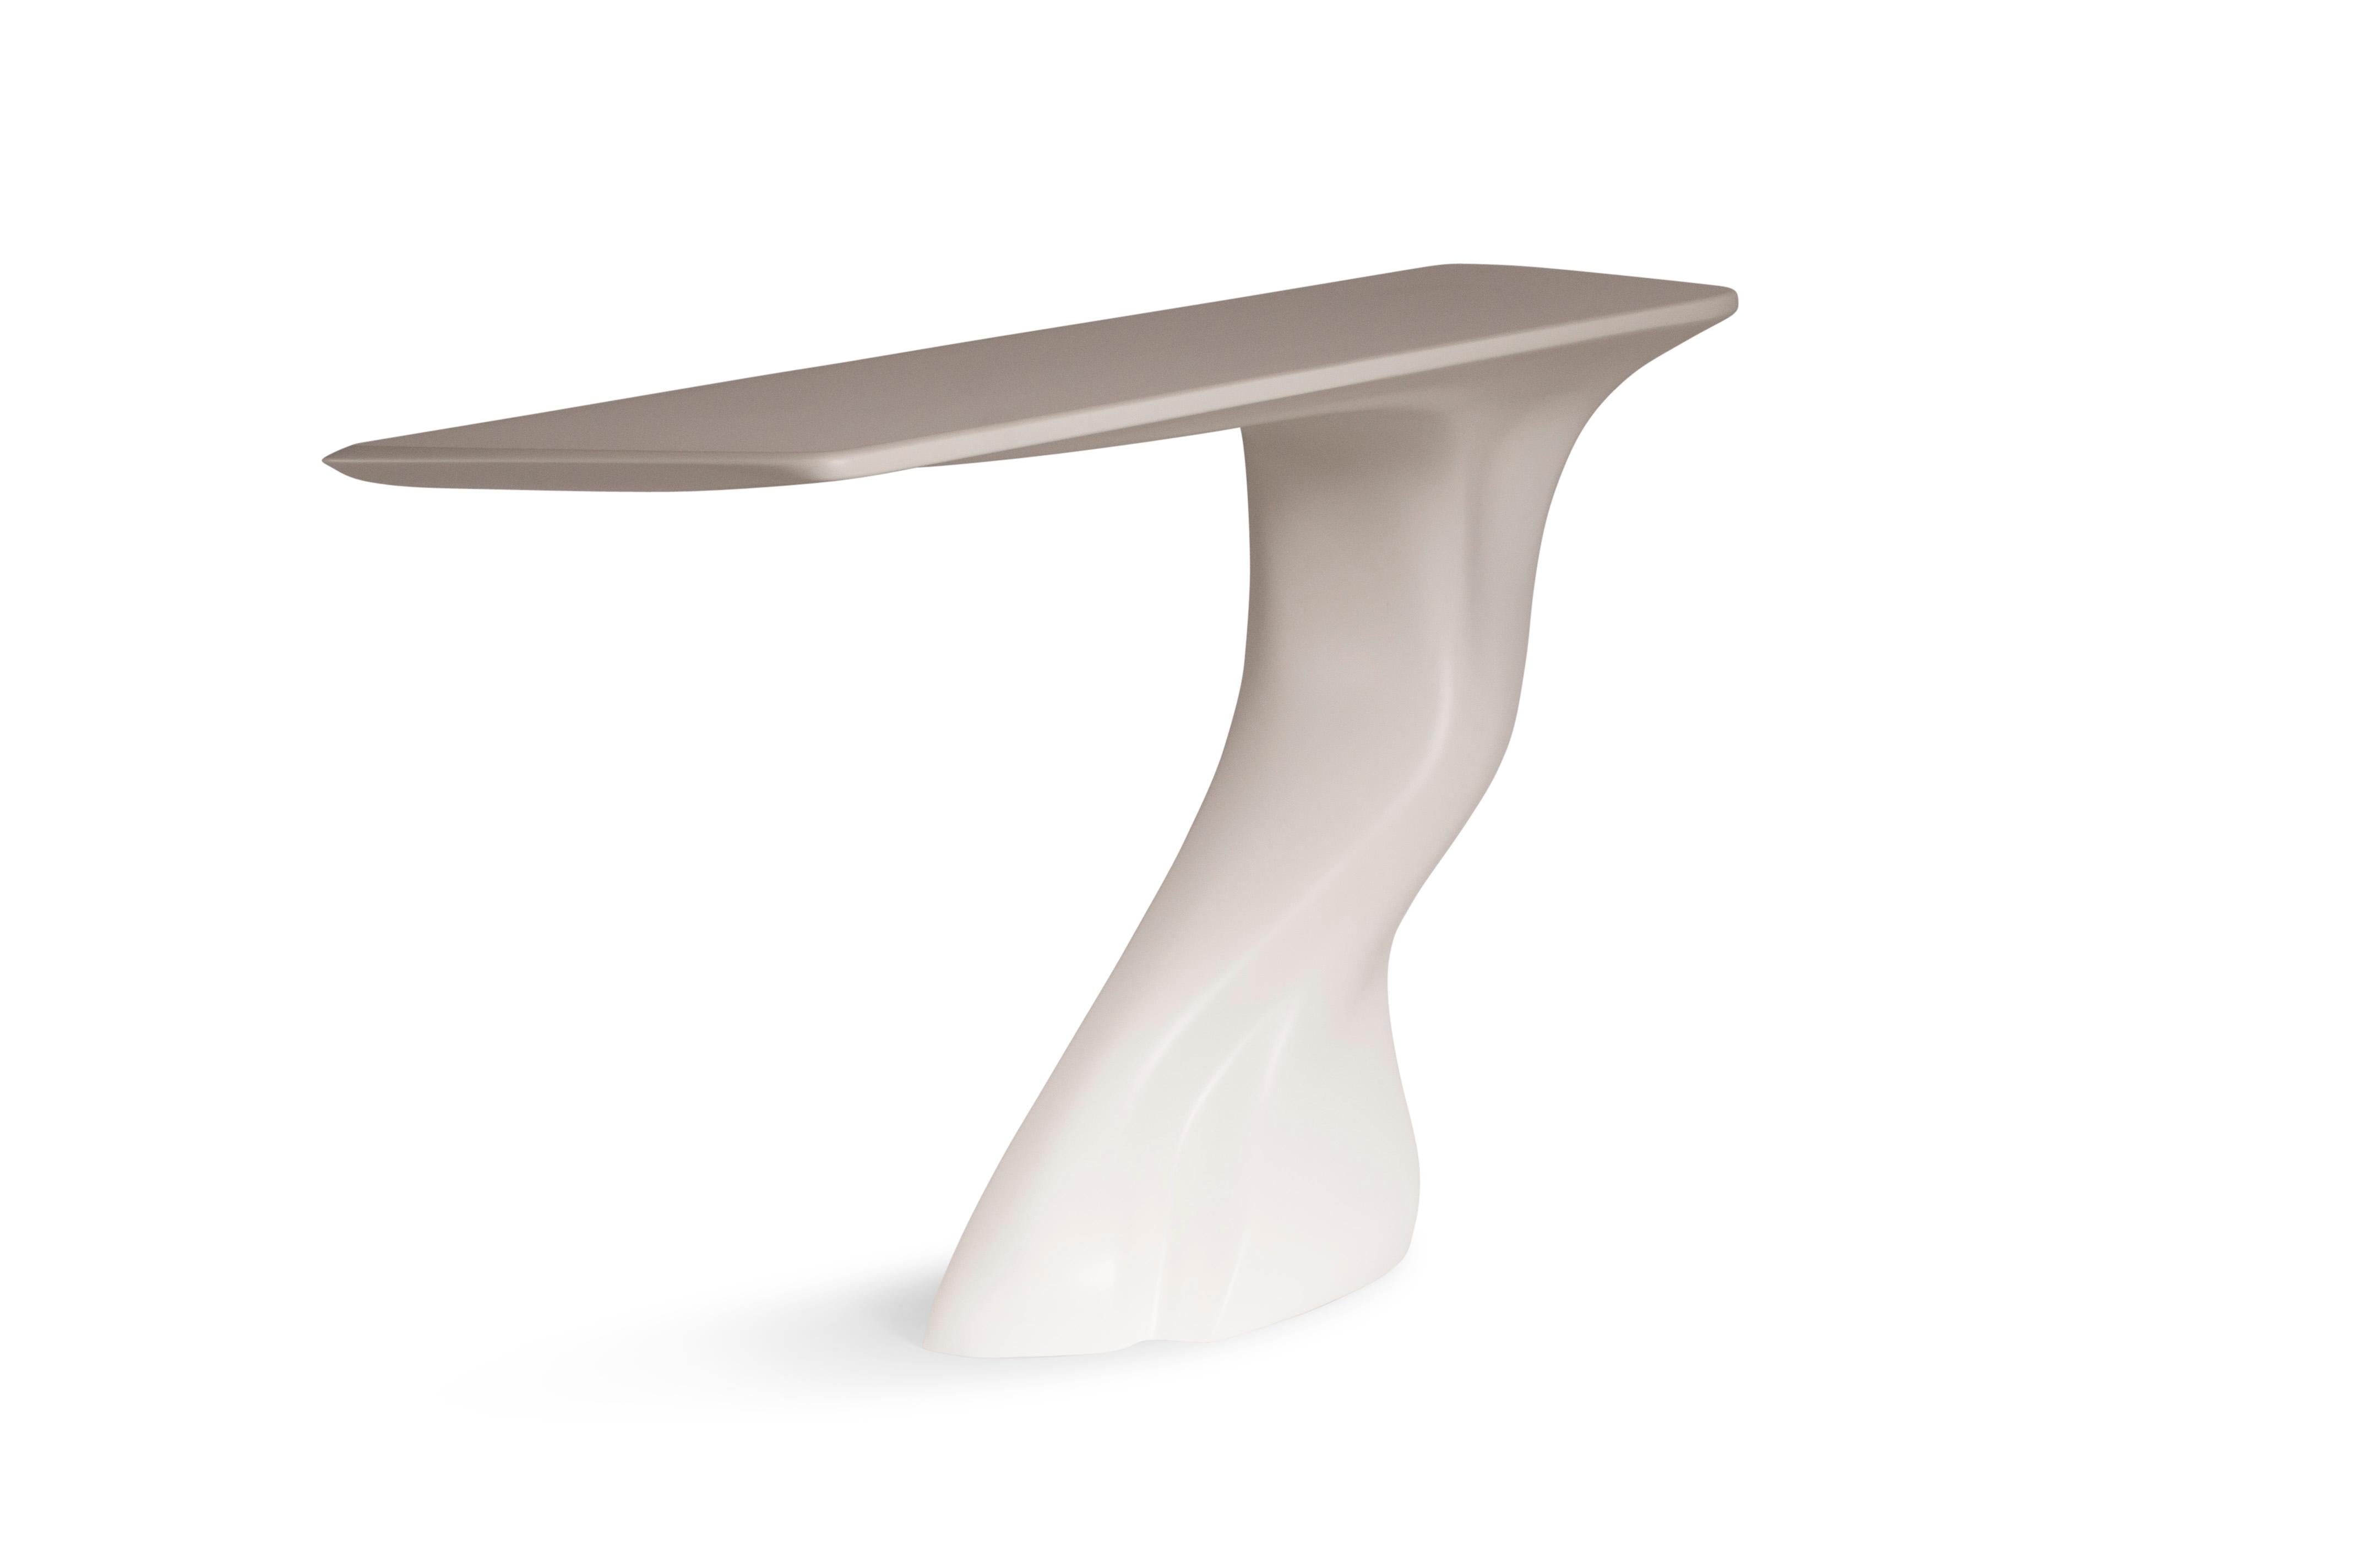 La table console Frolic est une élégante table d'art sculpturale futuriste à la forme dynamique, conçue et fabriquée par Amorph. La table console Frolic est fabriquée en bois avec une finition laquée matte blanche. Par nature, l'aspect du bois de